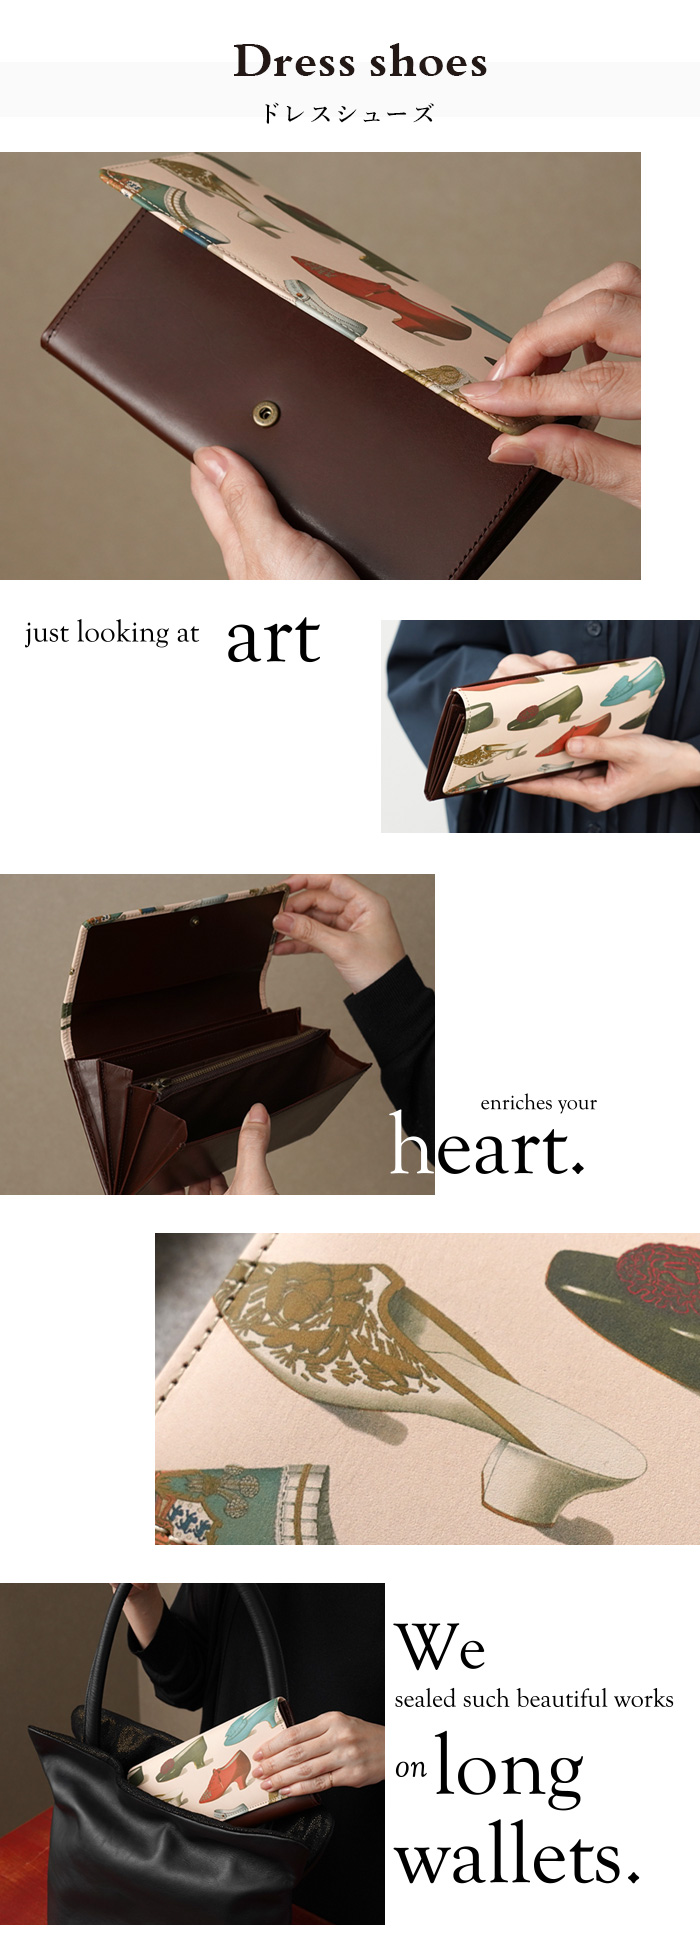 ホック一つでお財布を開閉できます。かぶせ部分前面にアートを入れ、思わず眺めたくなるお財布です。